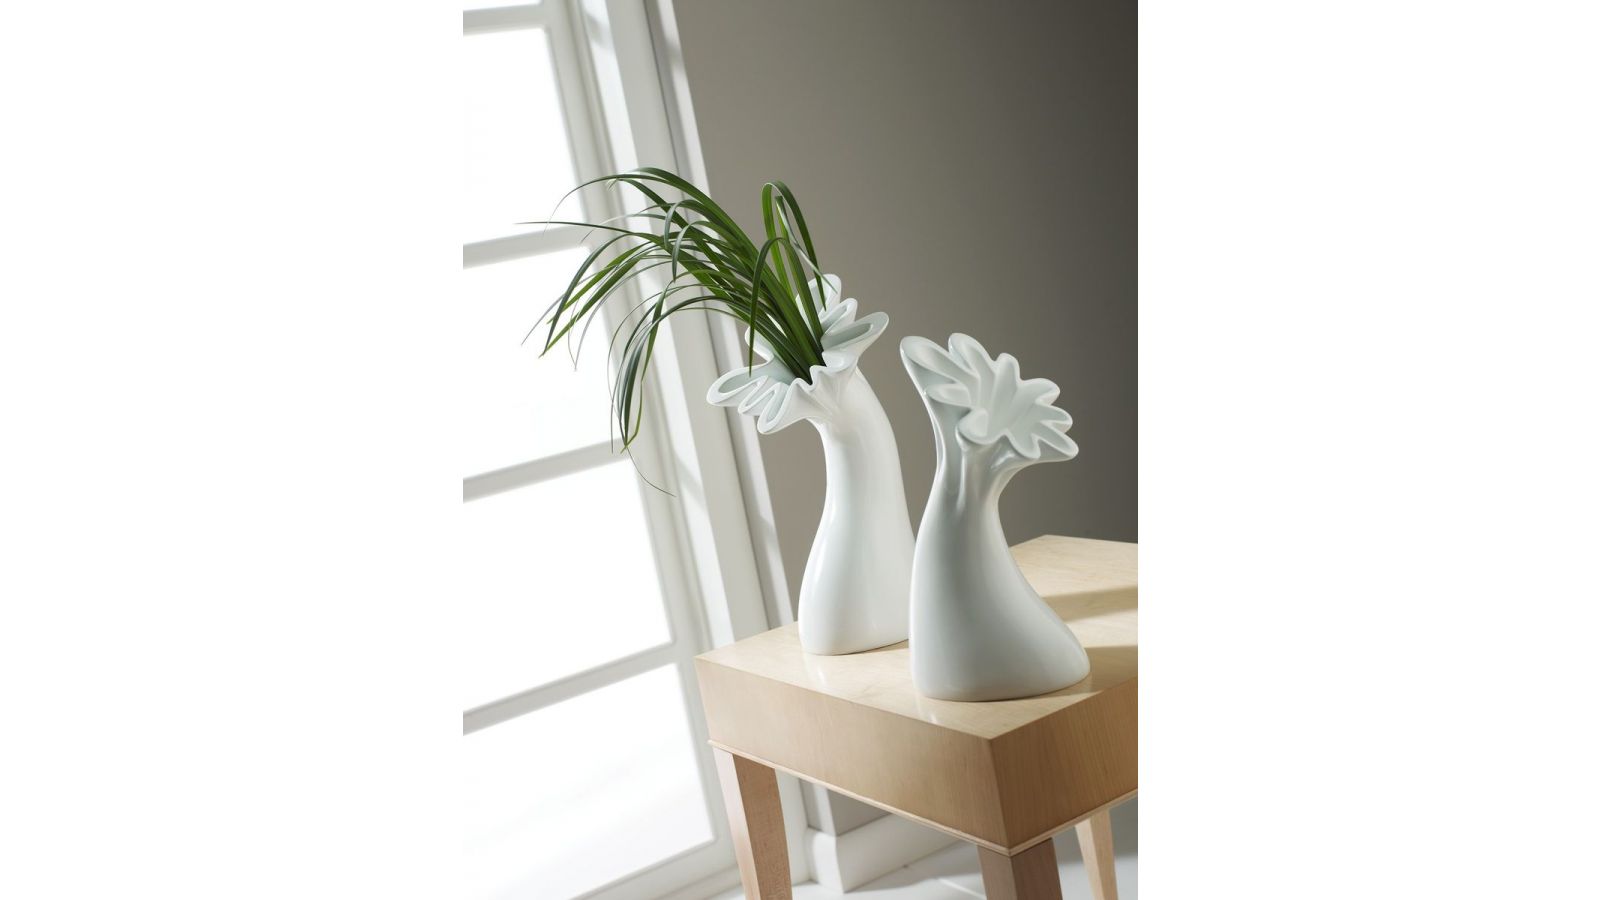 Anemone Vases